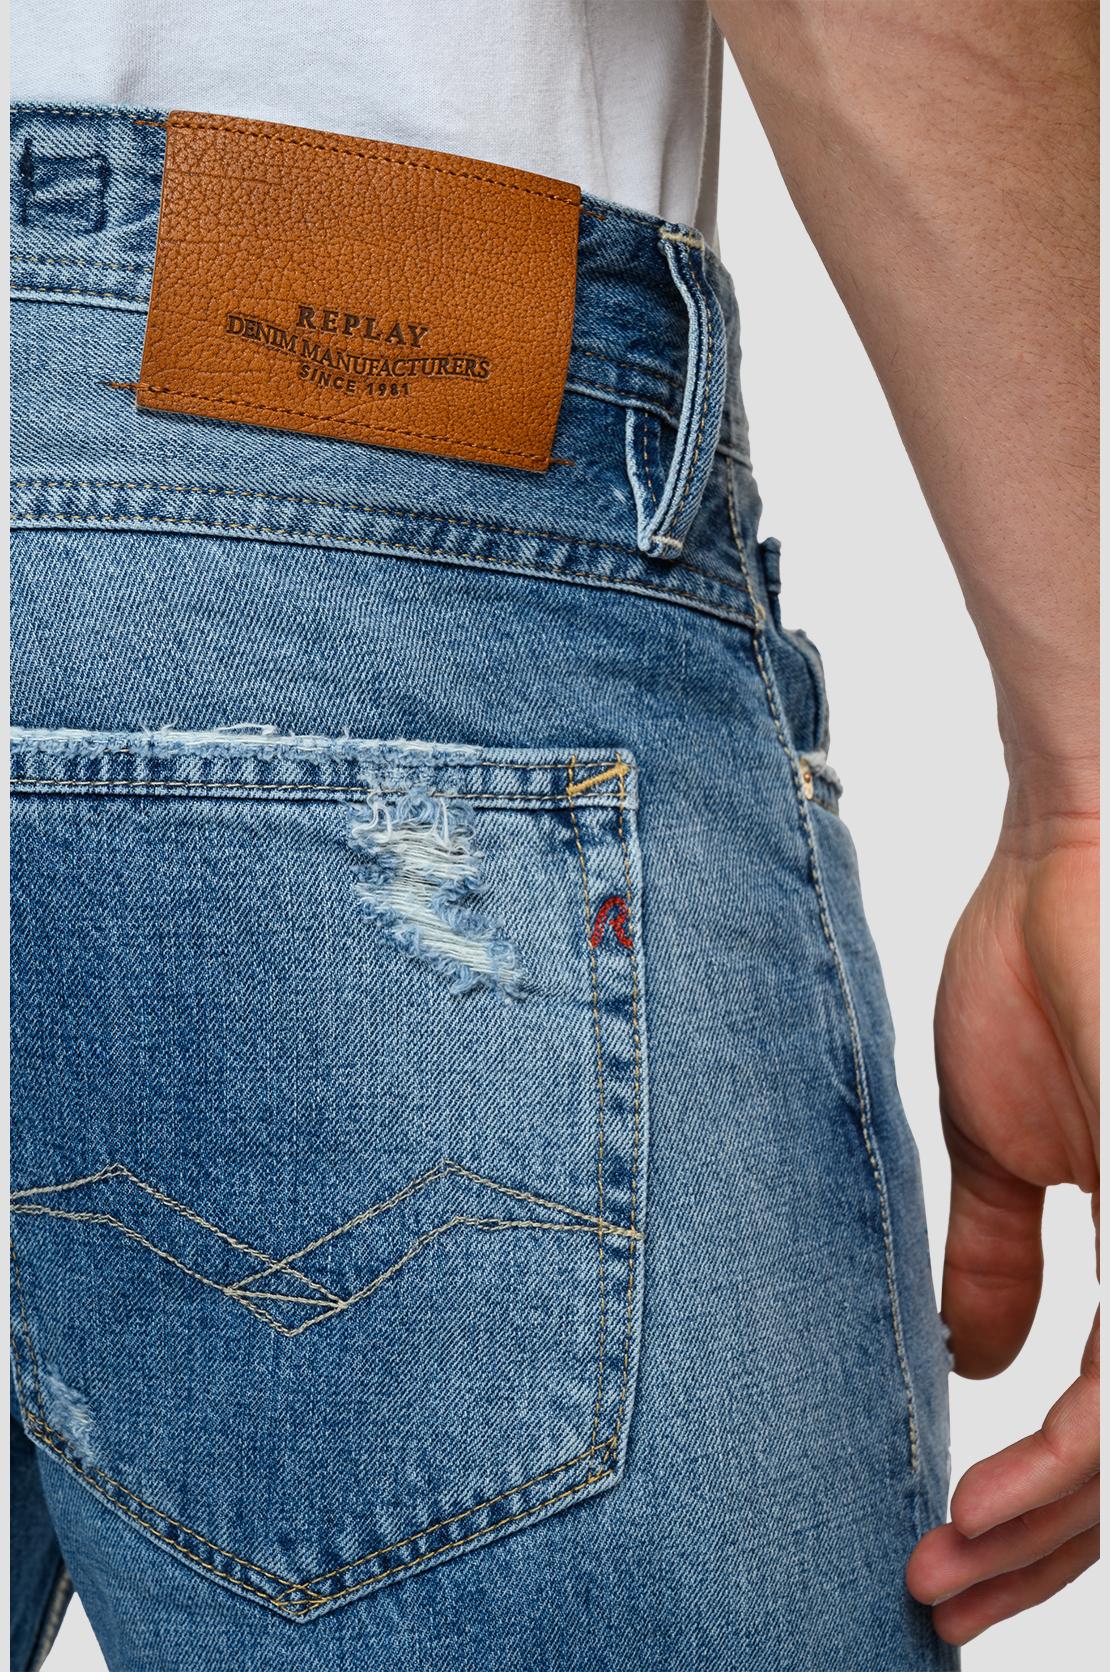 Replay Willbi Slim Fit Distressed Jeans 20 Year Wash – TS2 MENSWEAR